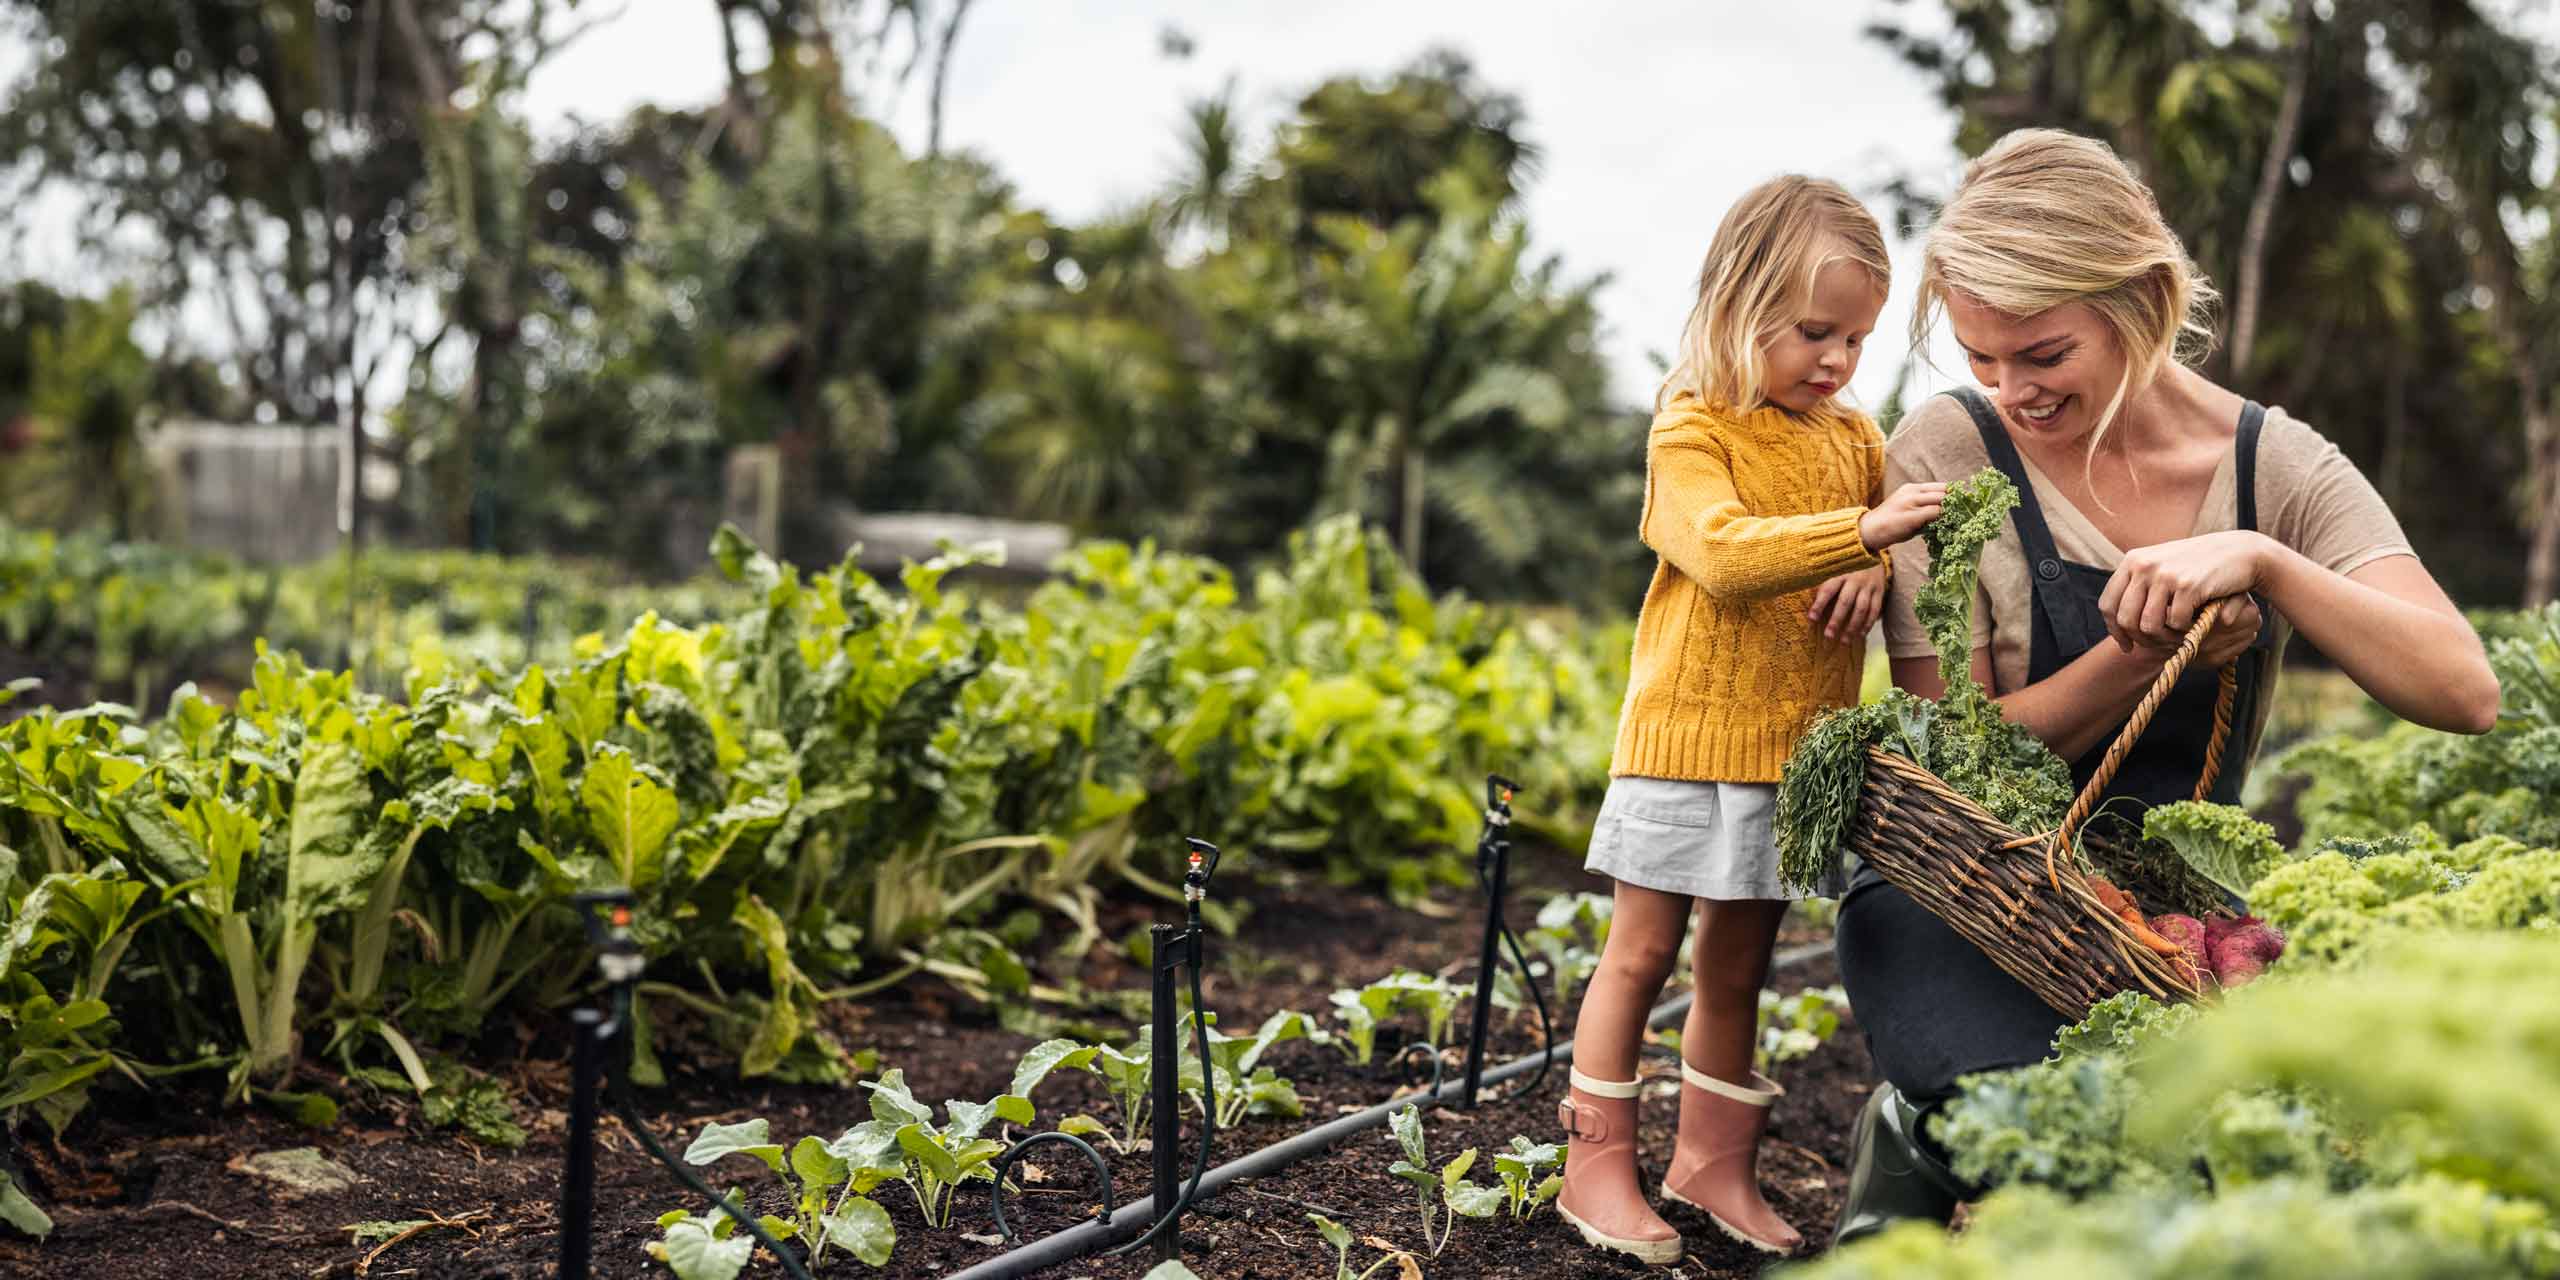 Eine Frau und ein kleines Kind ernten Gemüse in einem üppigen Garten. Die Frau zeigt dem Kind lächelnd ein Bündel Karotten, die sie gerade aus der Erde gezogen haben.